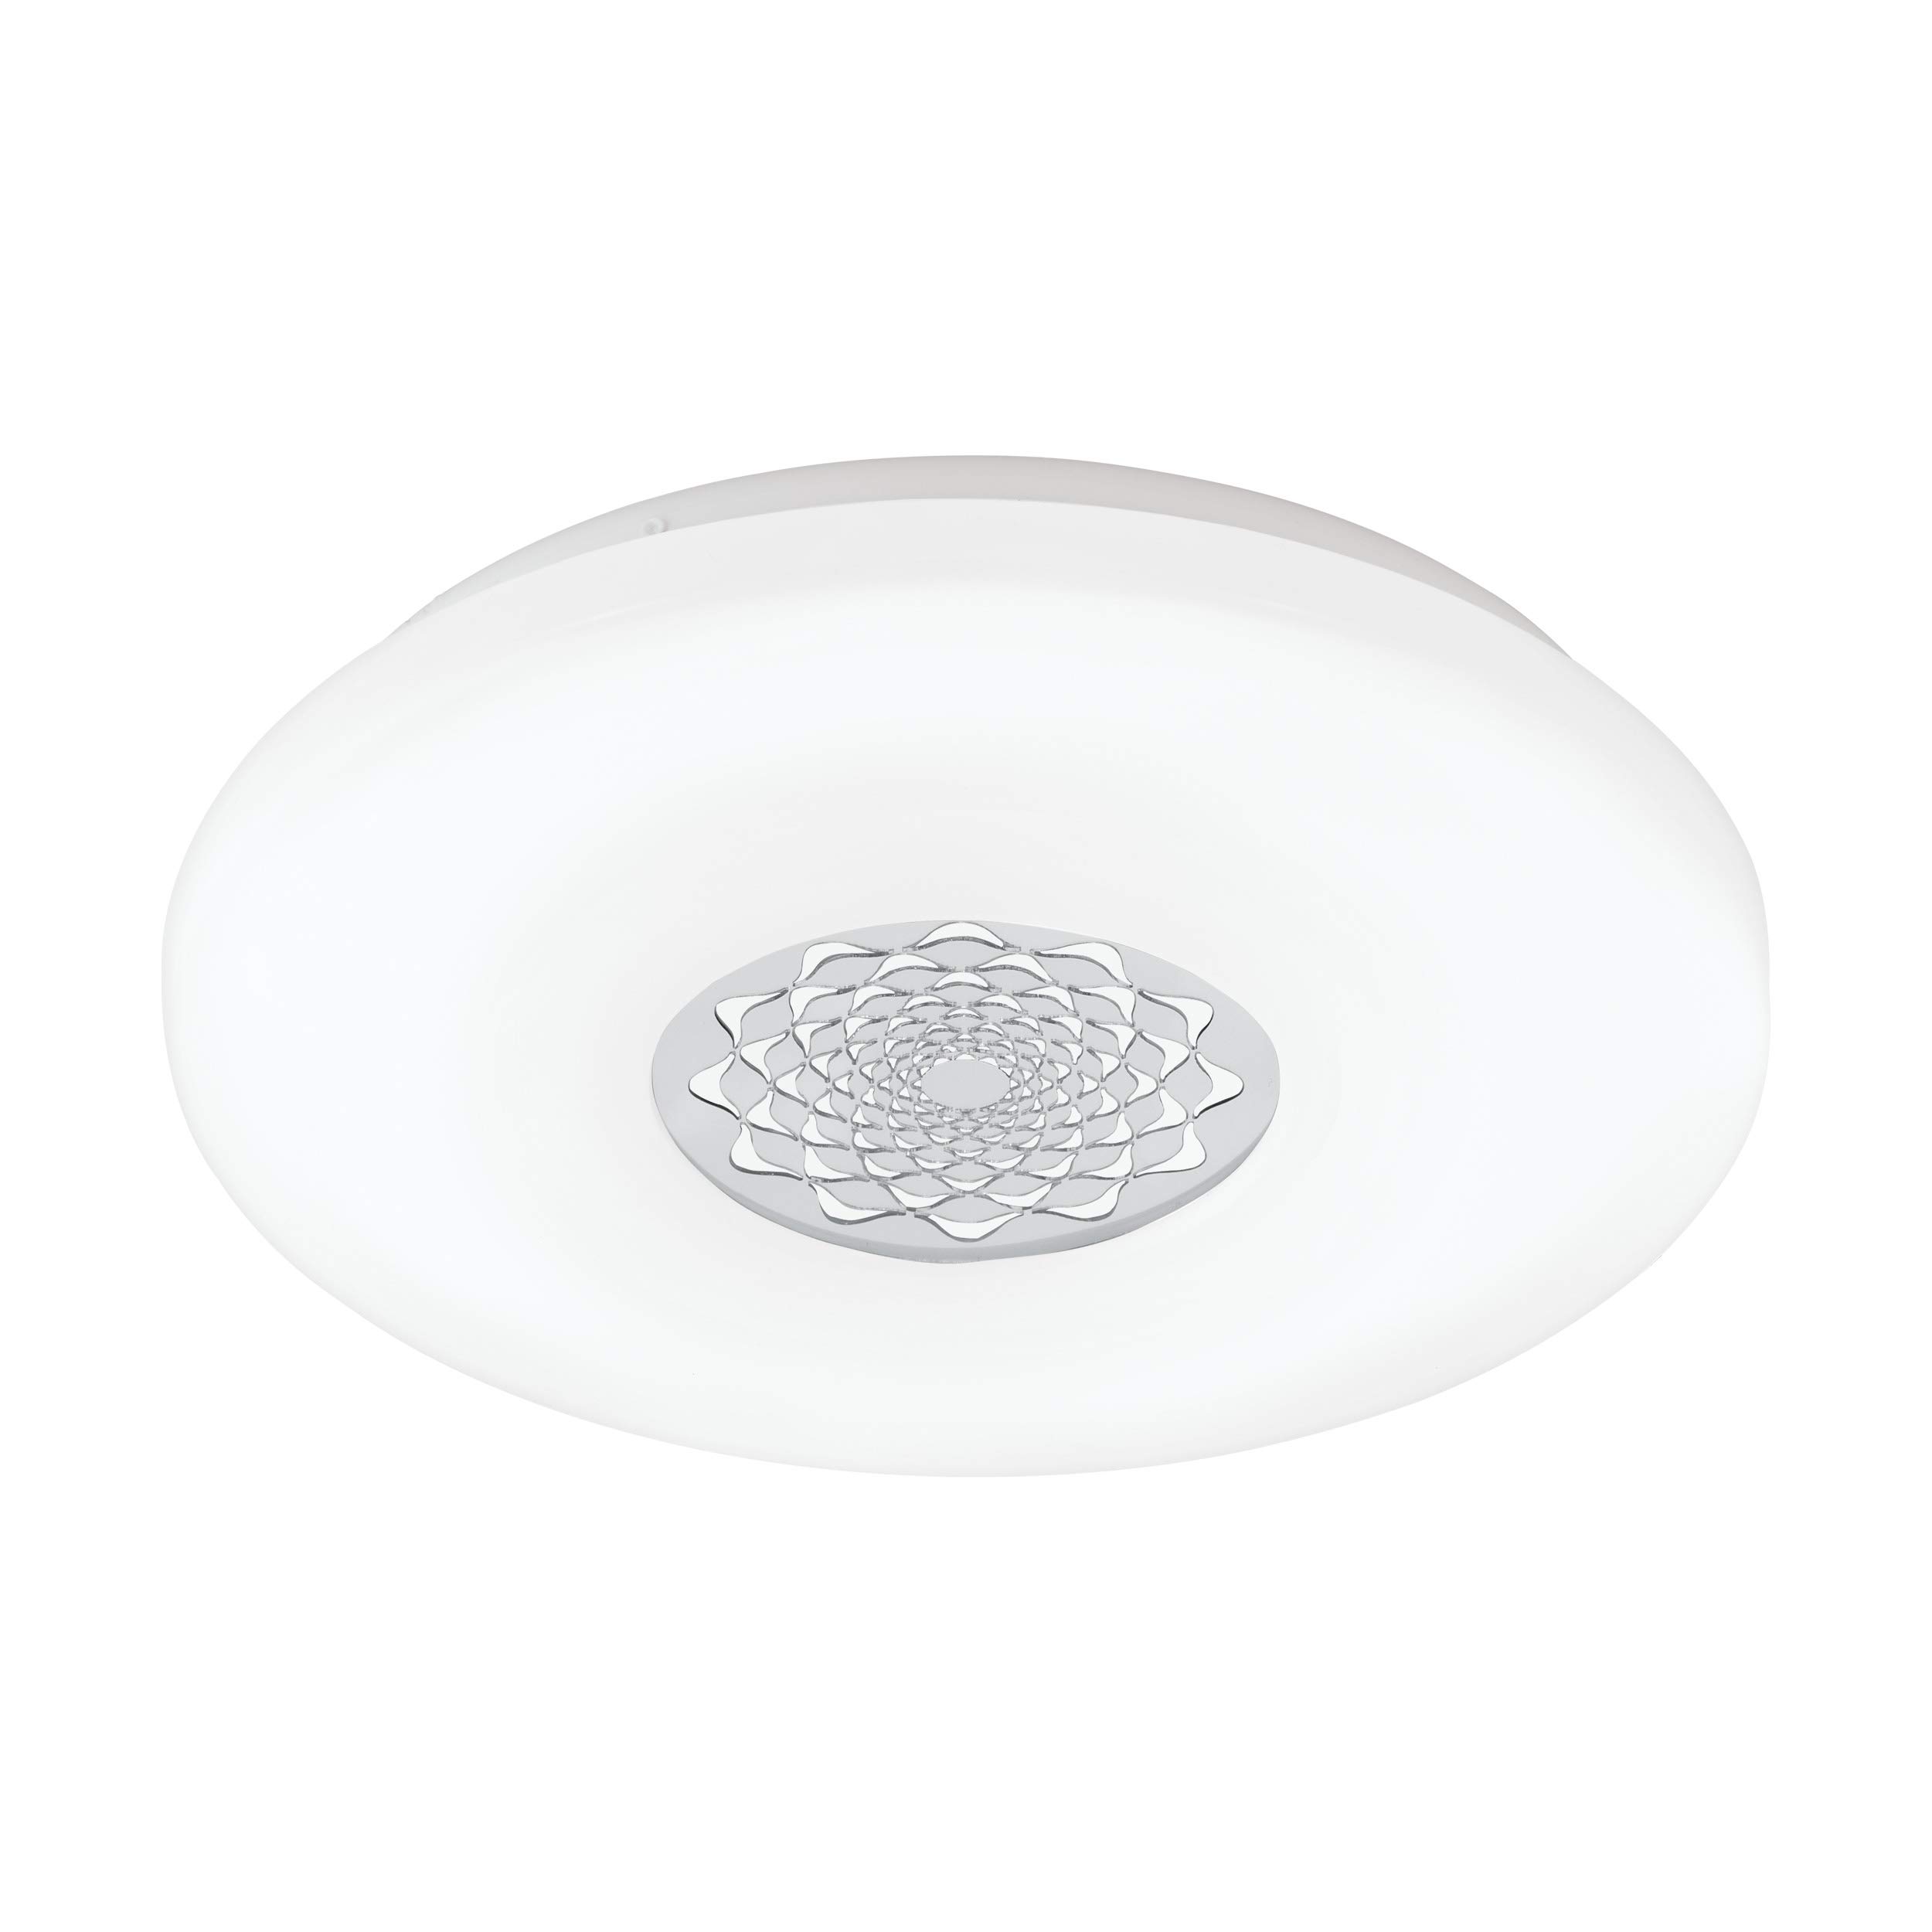 EGLO LED Deckenlampe Capasso 1, 1 flammige Deckenleuchte, Wandlampe mit Muster, Material: Stahl und Kunststoff, Farbe: Chrom, weiß, Ø: 40 cm